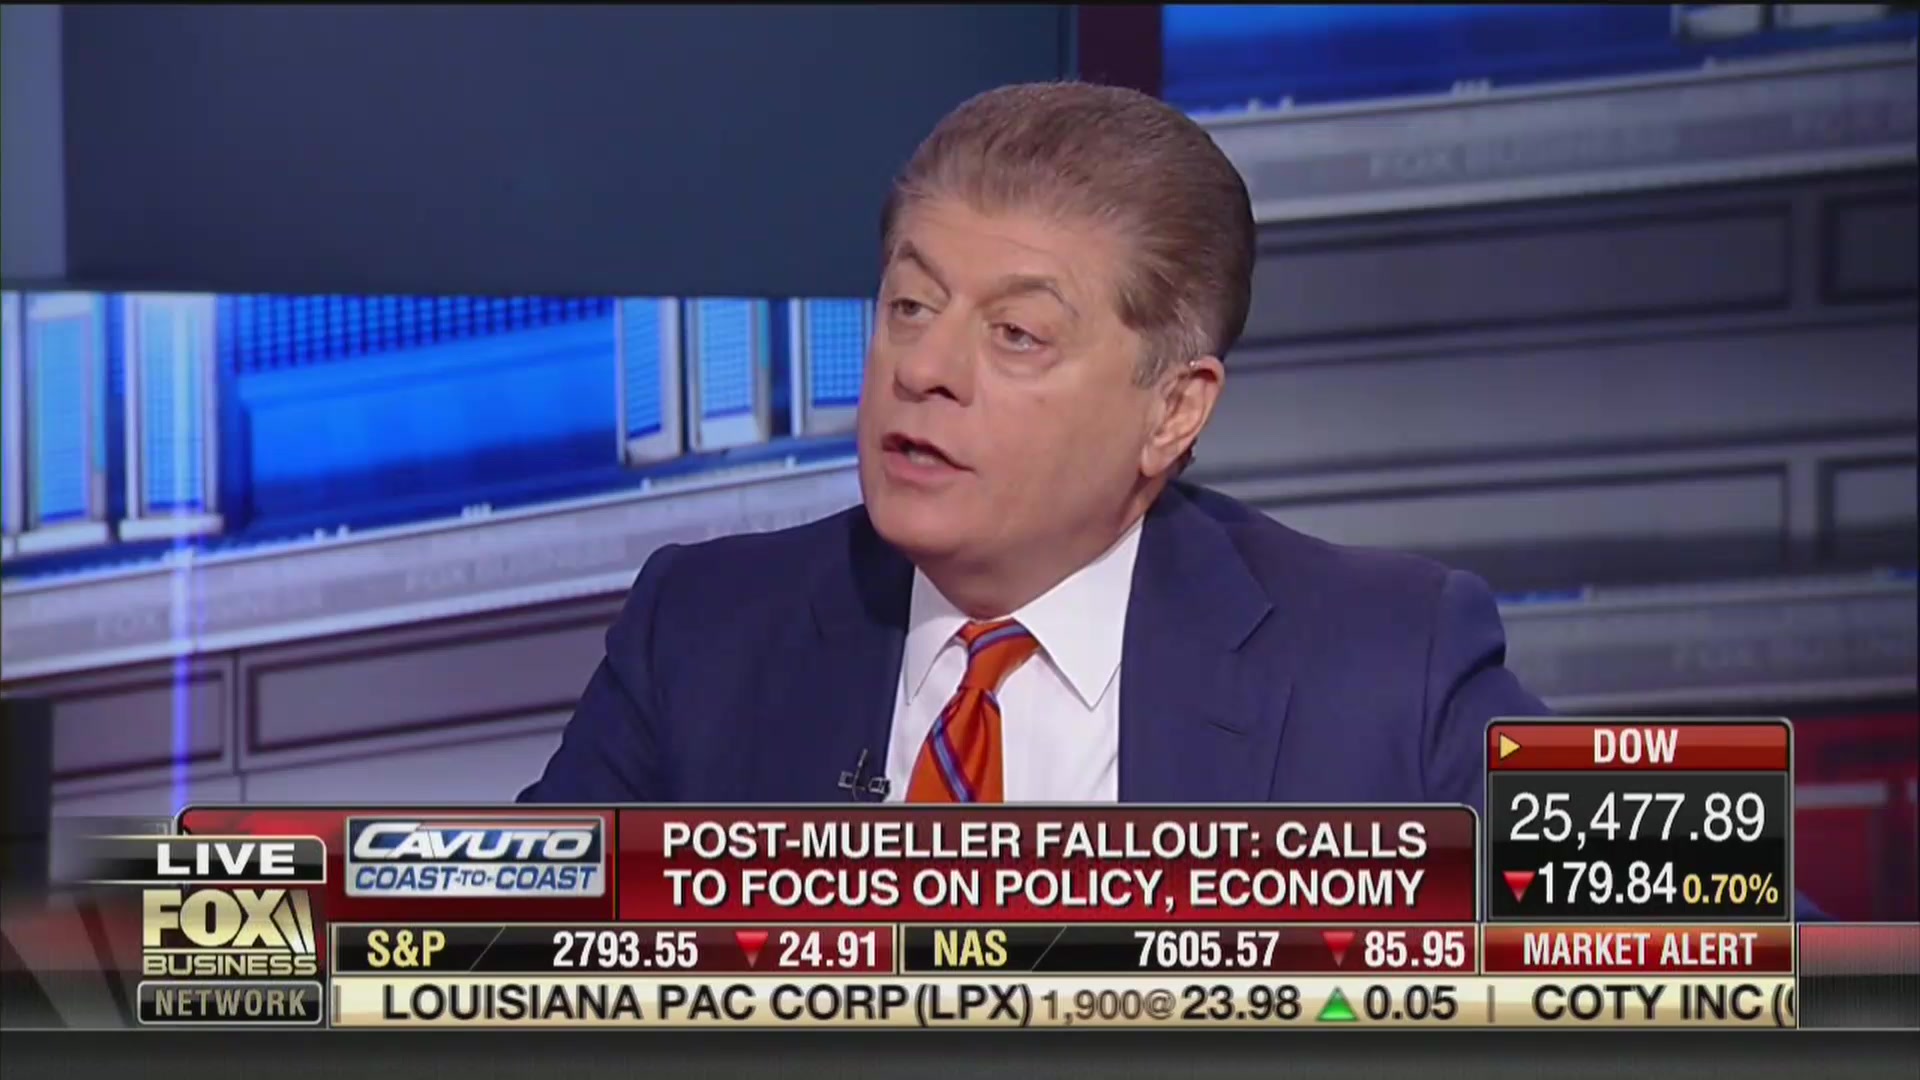 Fox’s Judge Nap: Adam Schiff’s ‘Correct’ That Mueller Report Will Show Collusion